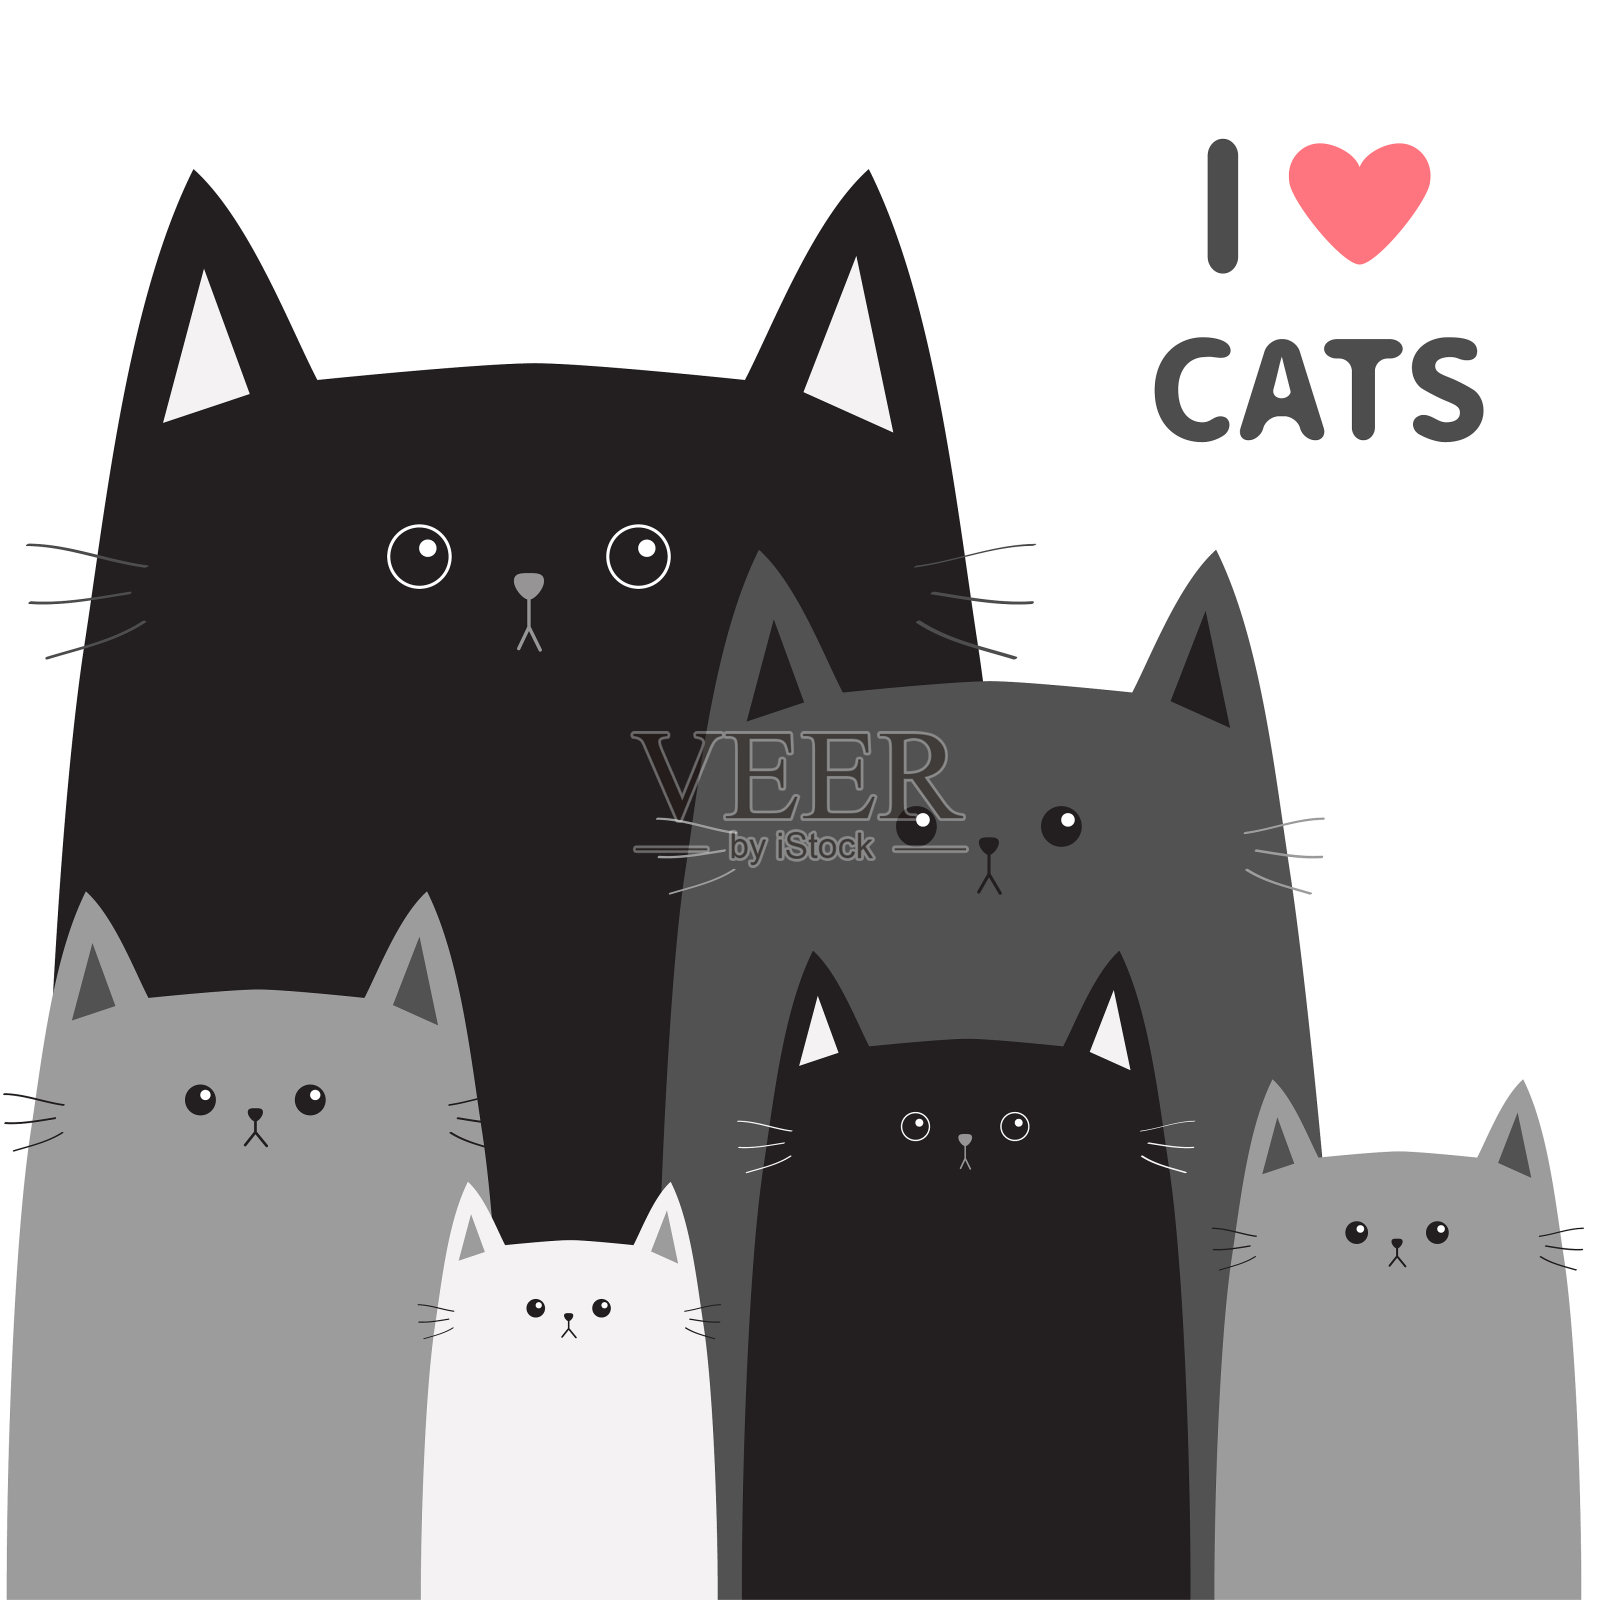 黑灰猫头脸。不同的大小。我喜欢猫粉红色的心。不同的大小。可爱的卡通有趣的角色家庭设置。宠物宝宝收集卡。平面设计。白色背景隔离插画图片素材